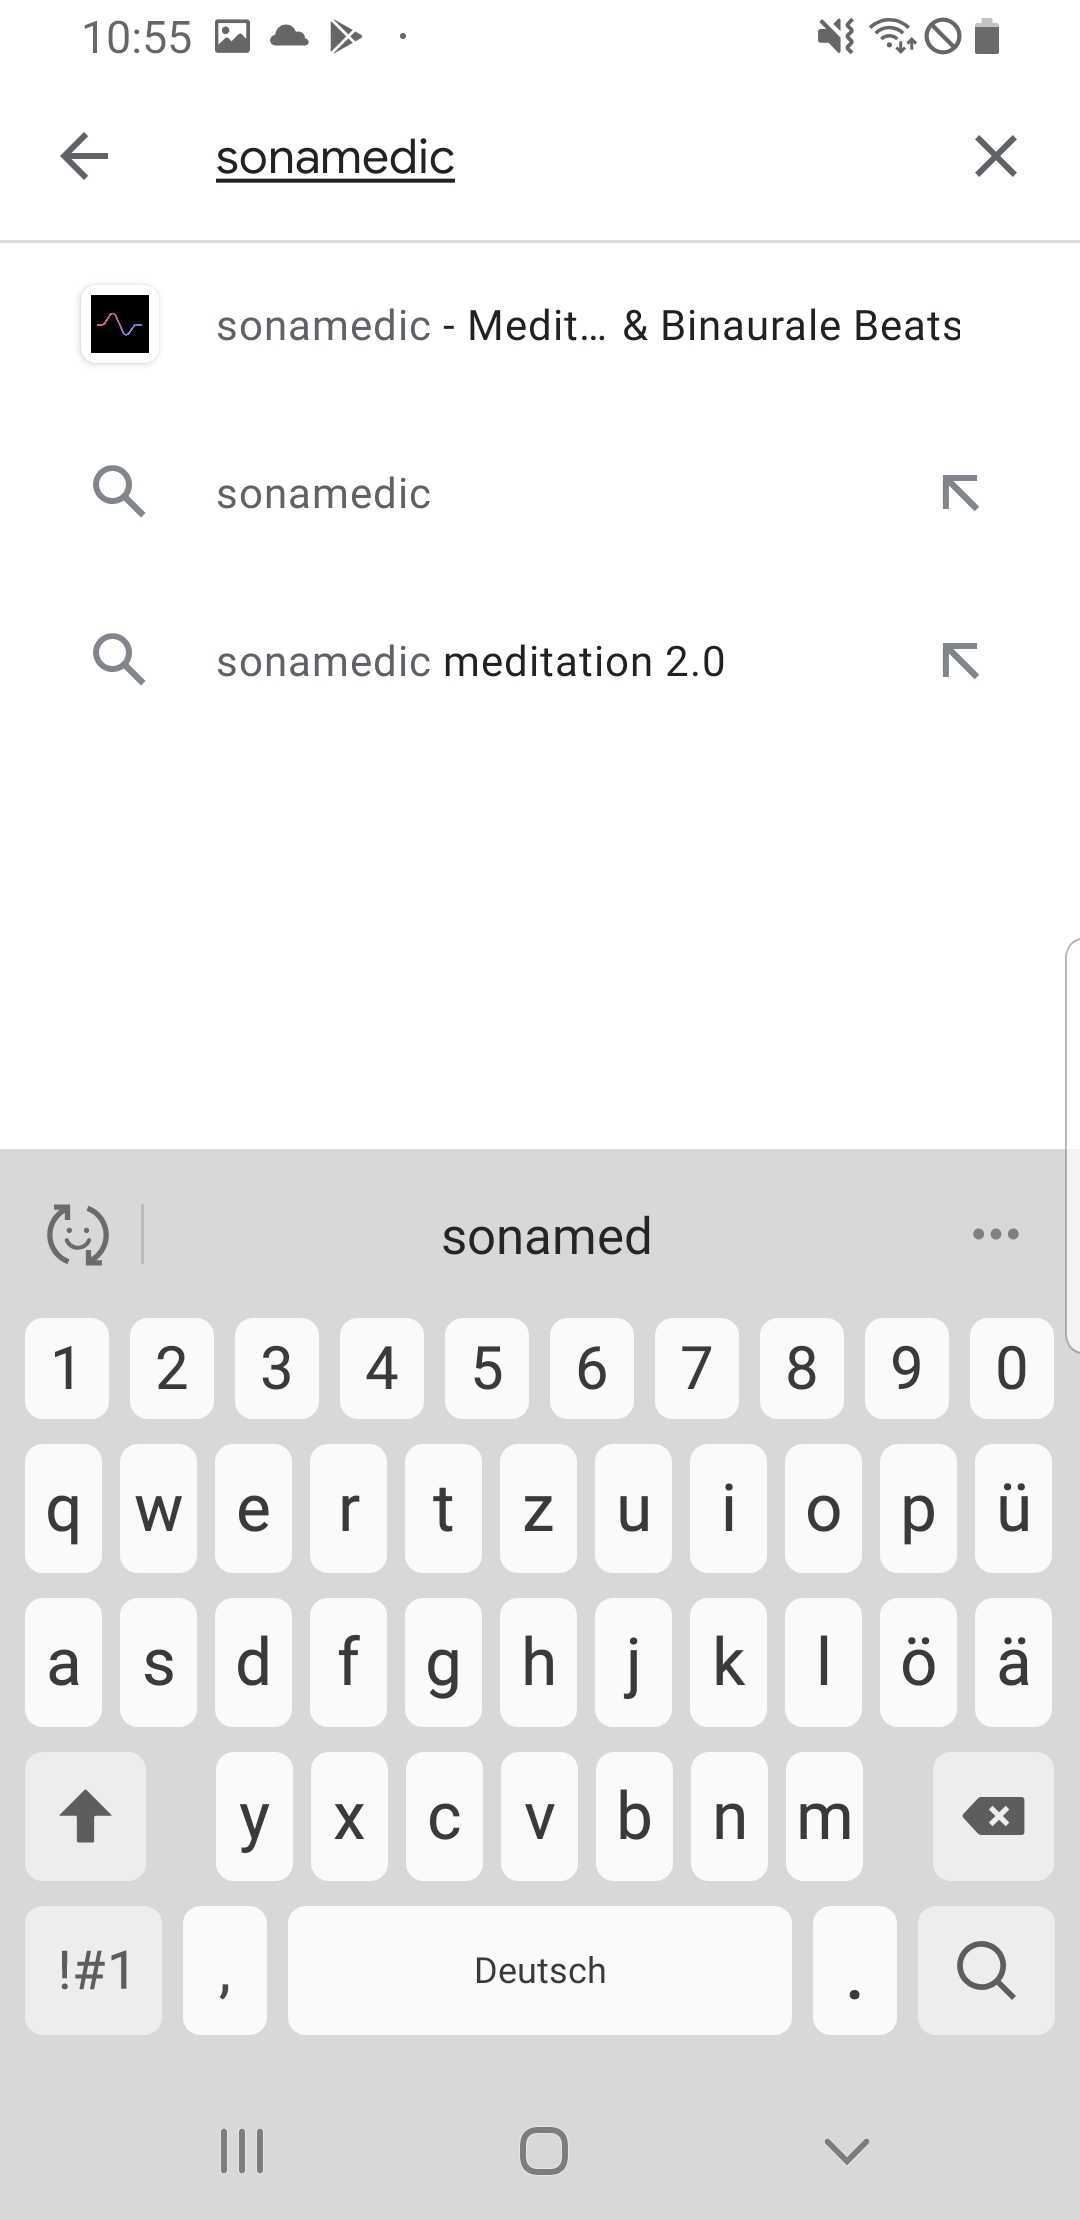 FAQ - häufig gestellte Fragen: sonamedic in der Suche